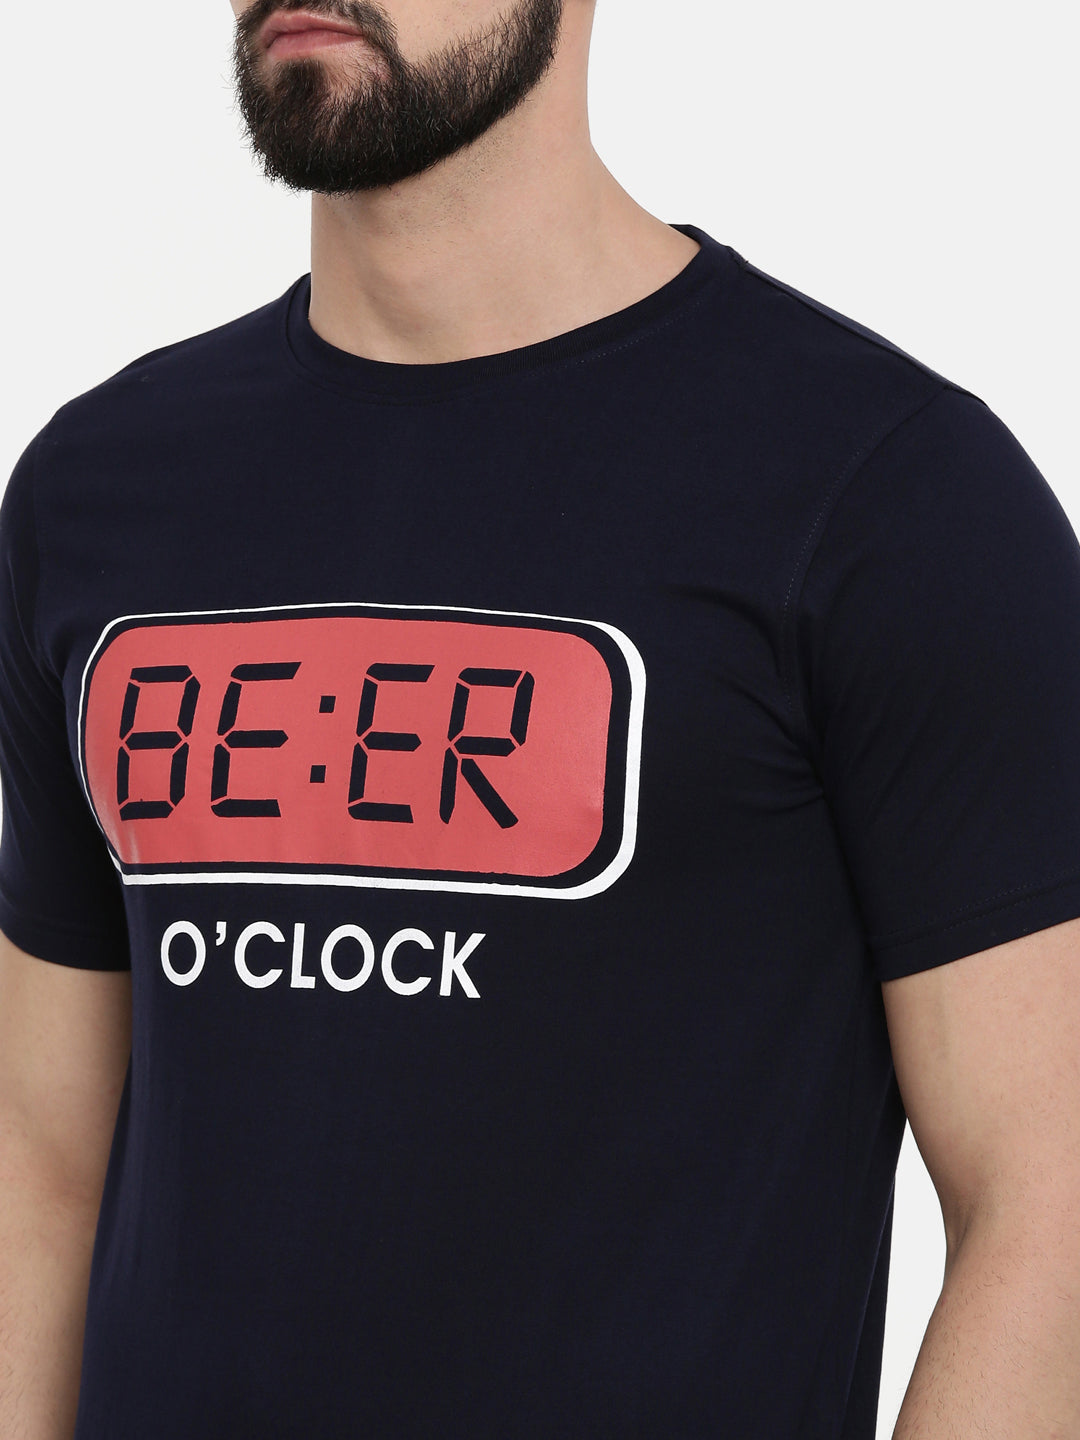 Beer O Clock T Shirt Graphic T-Shirts Bushirt   